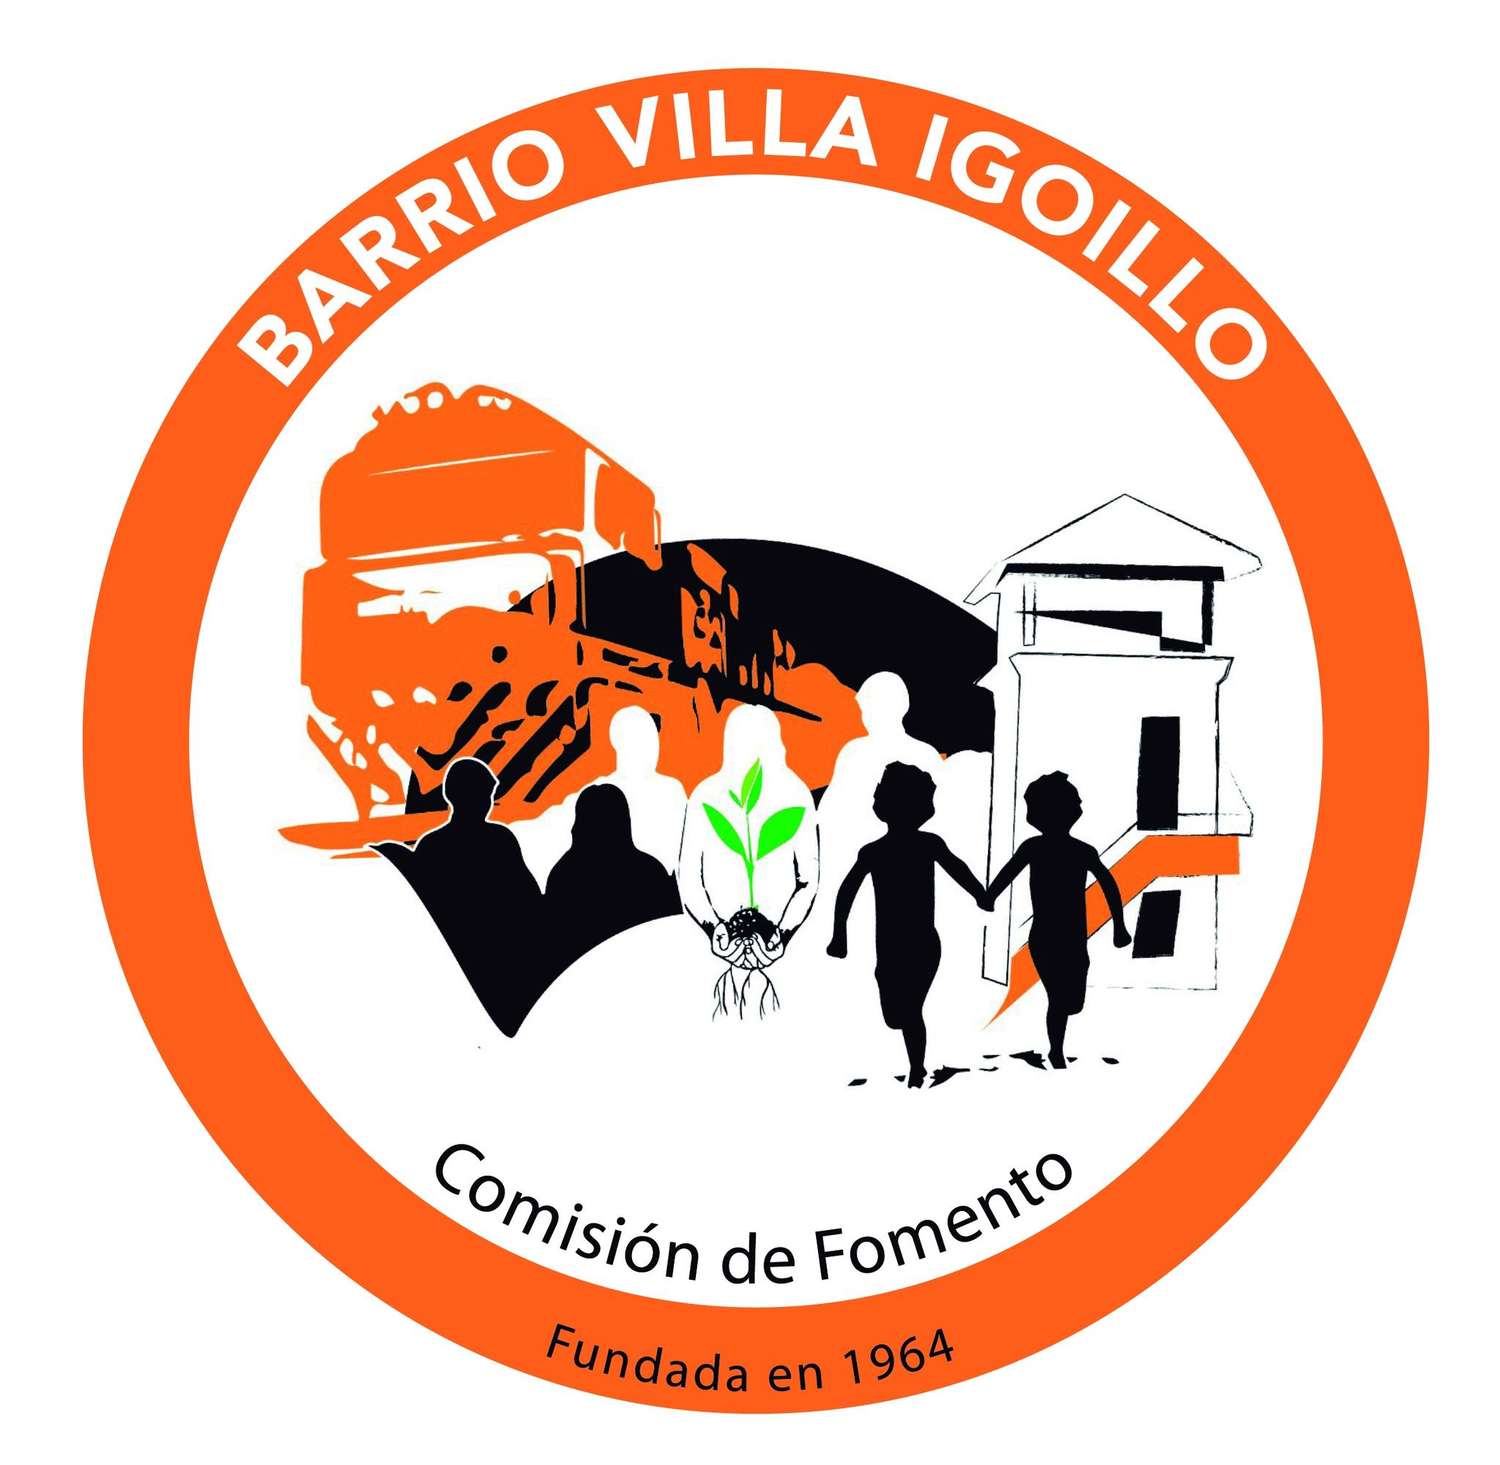 Villa Igoillo: arrancan los talleres en la sede de calle Bonorino